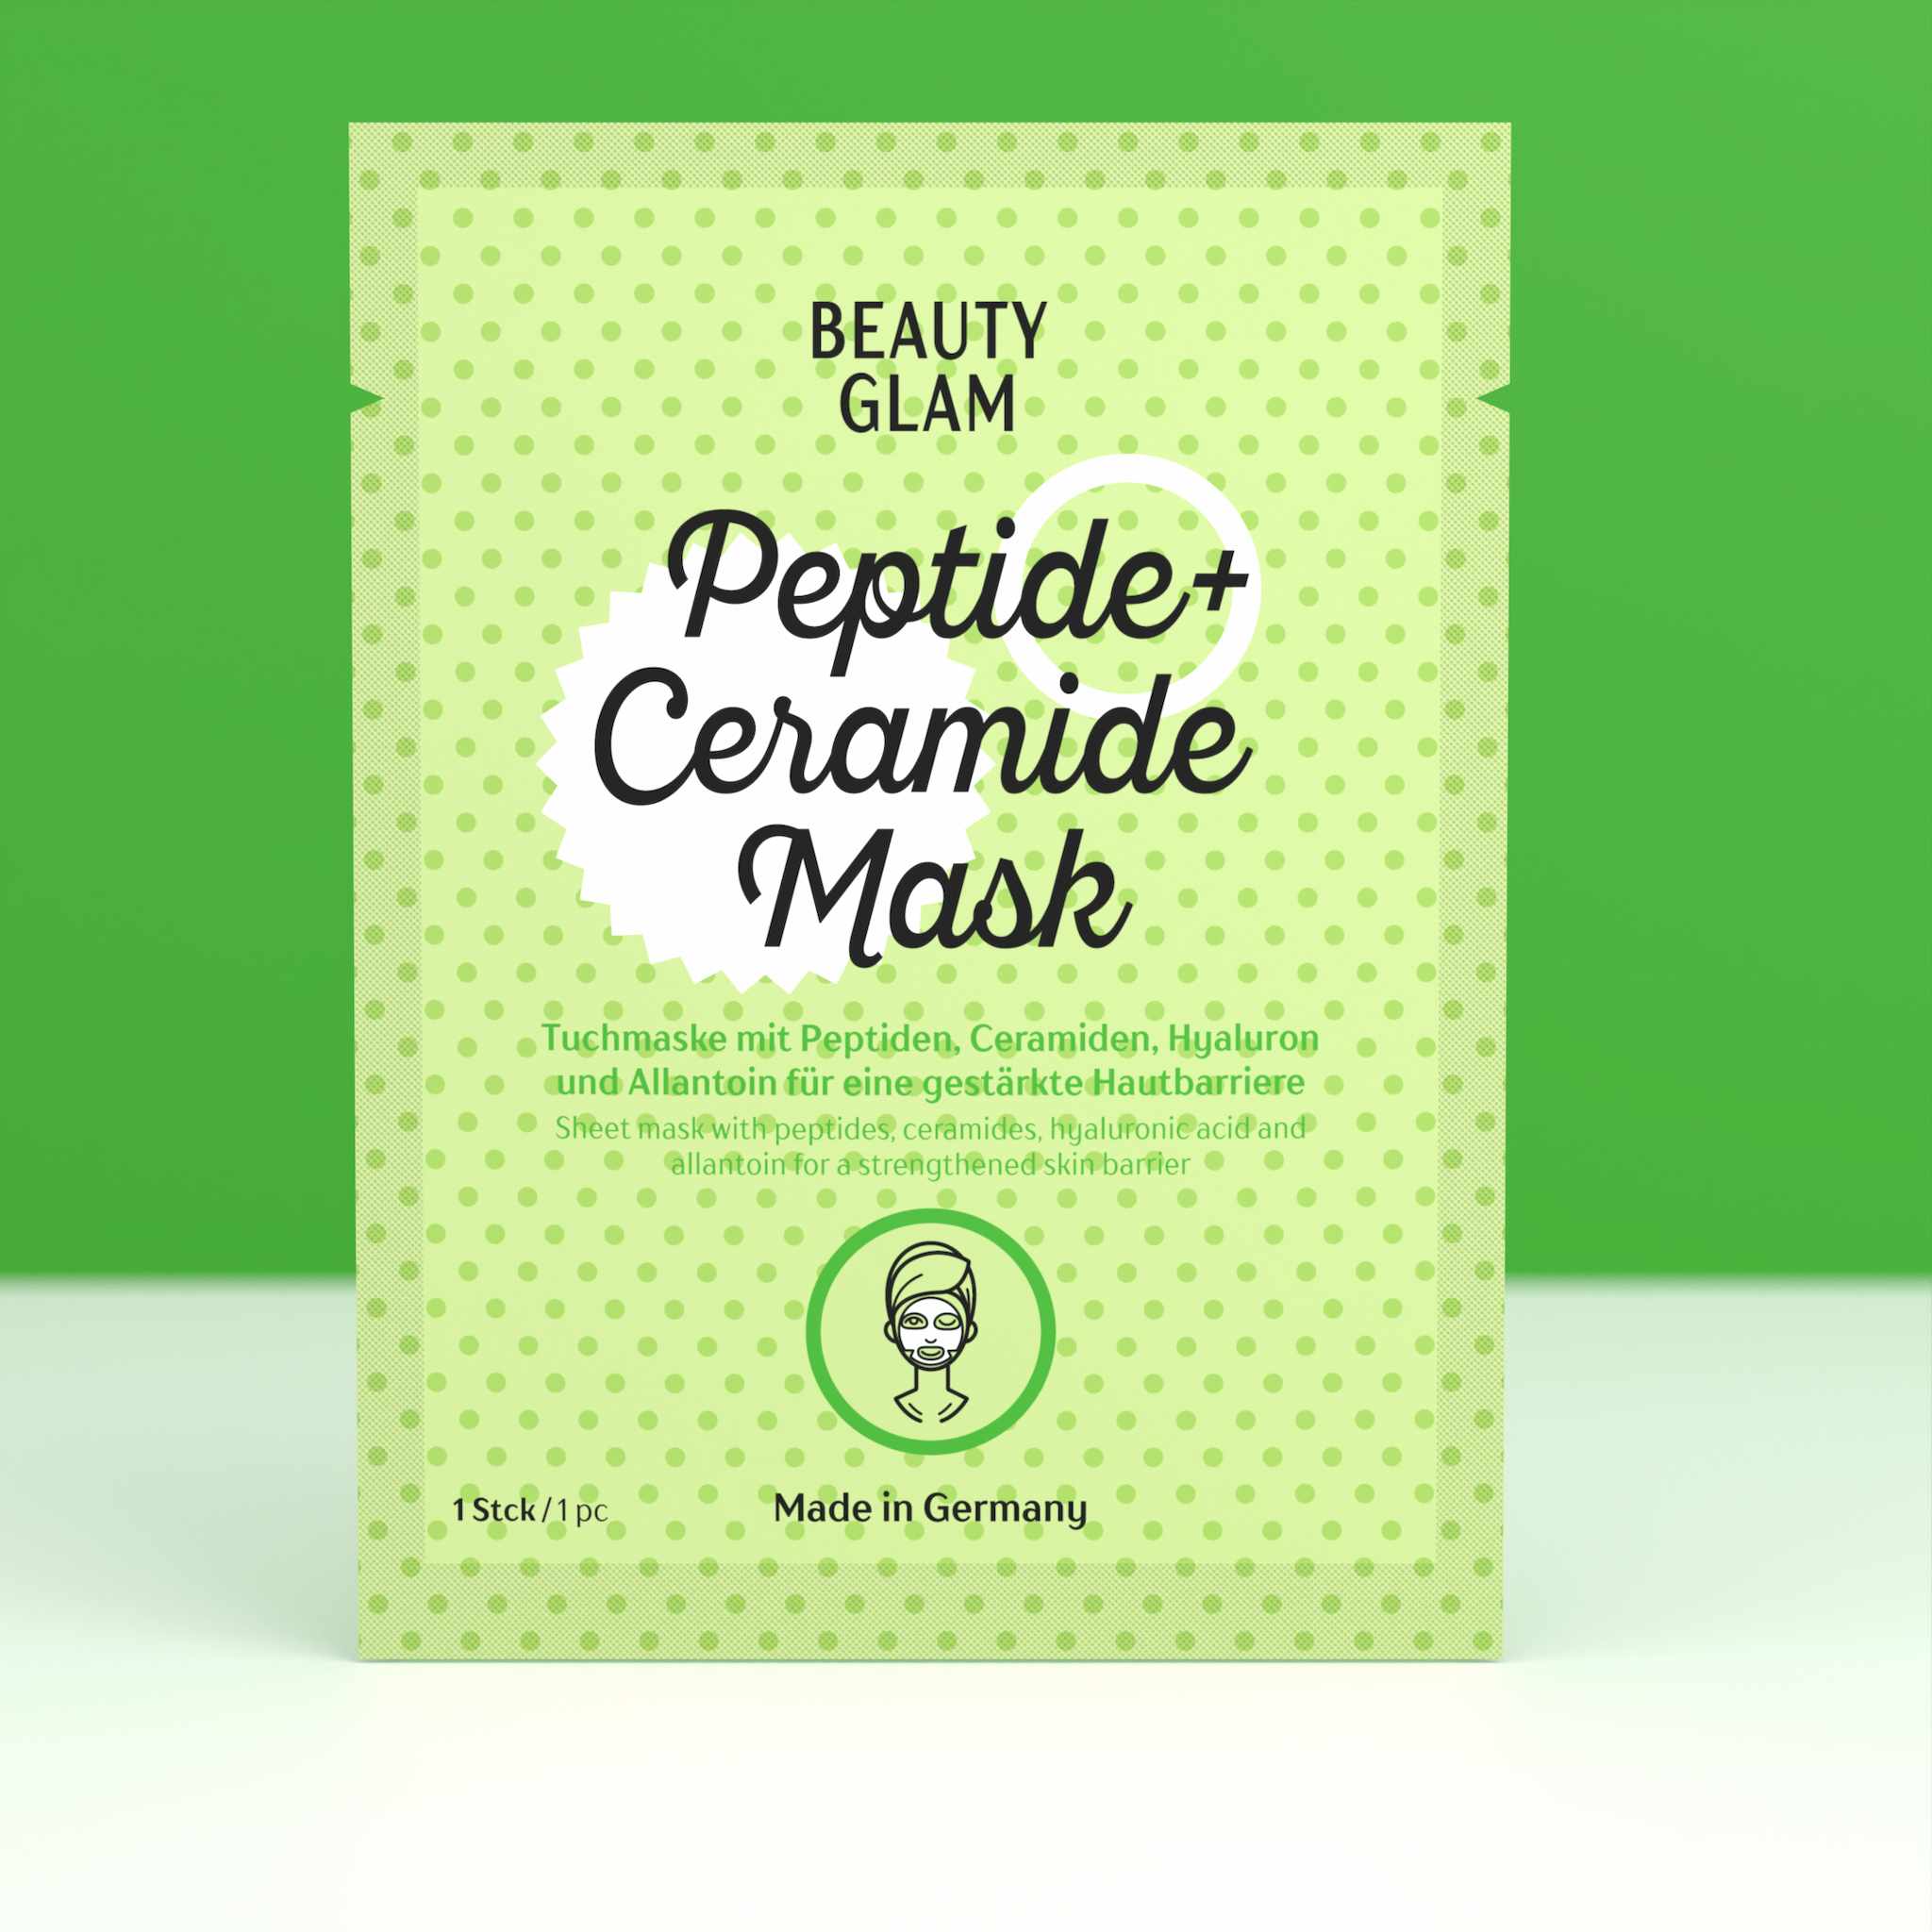 Beauty Glam Peptide + Ceramide Mask 5er Set